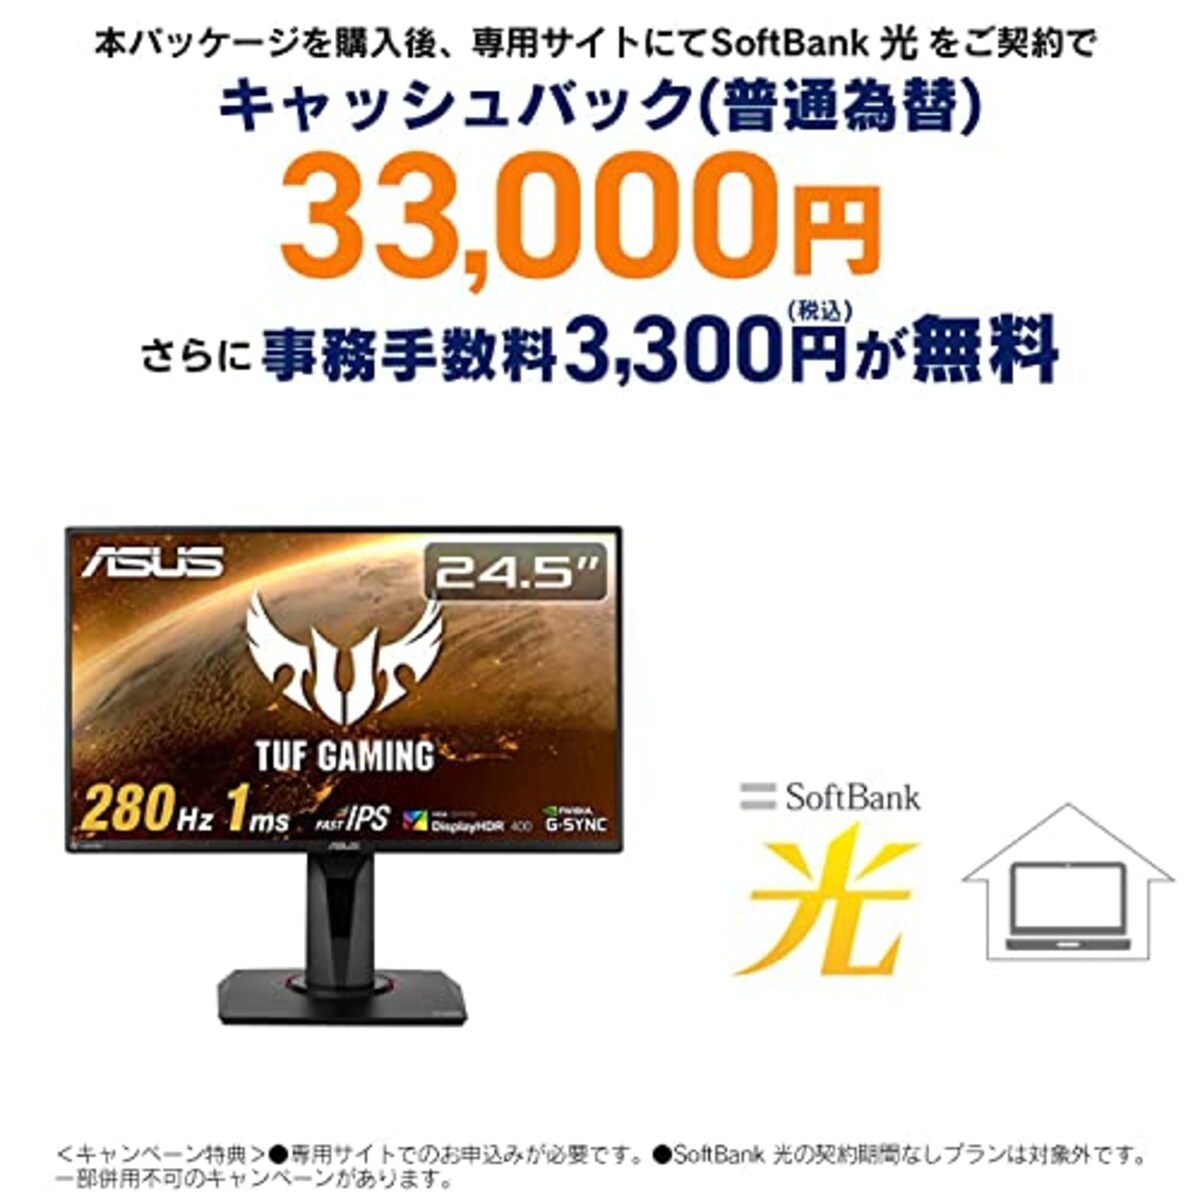 SoftBank 光 お申し込みエントリーパッケージ + ASUS ゲーミングモニター TUF Gaming VG259QM 24.5インチ/280Hz/フルHD/IPS/1ms/HDR/HDMI×2,DP/G-SYNC Compatible/ELMB/スピーカー/3年保証